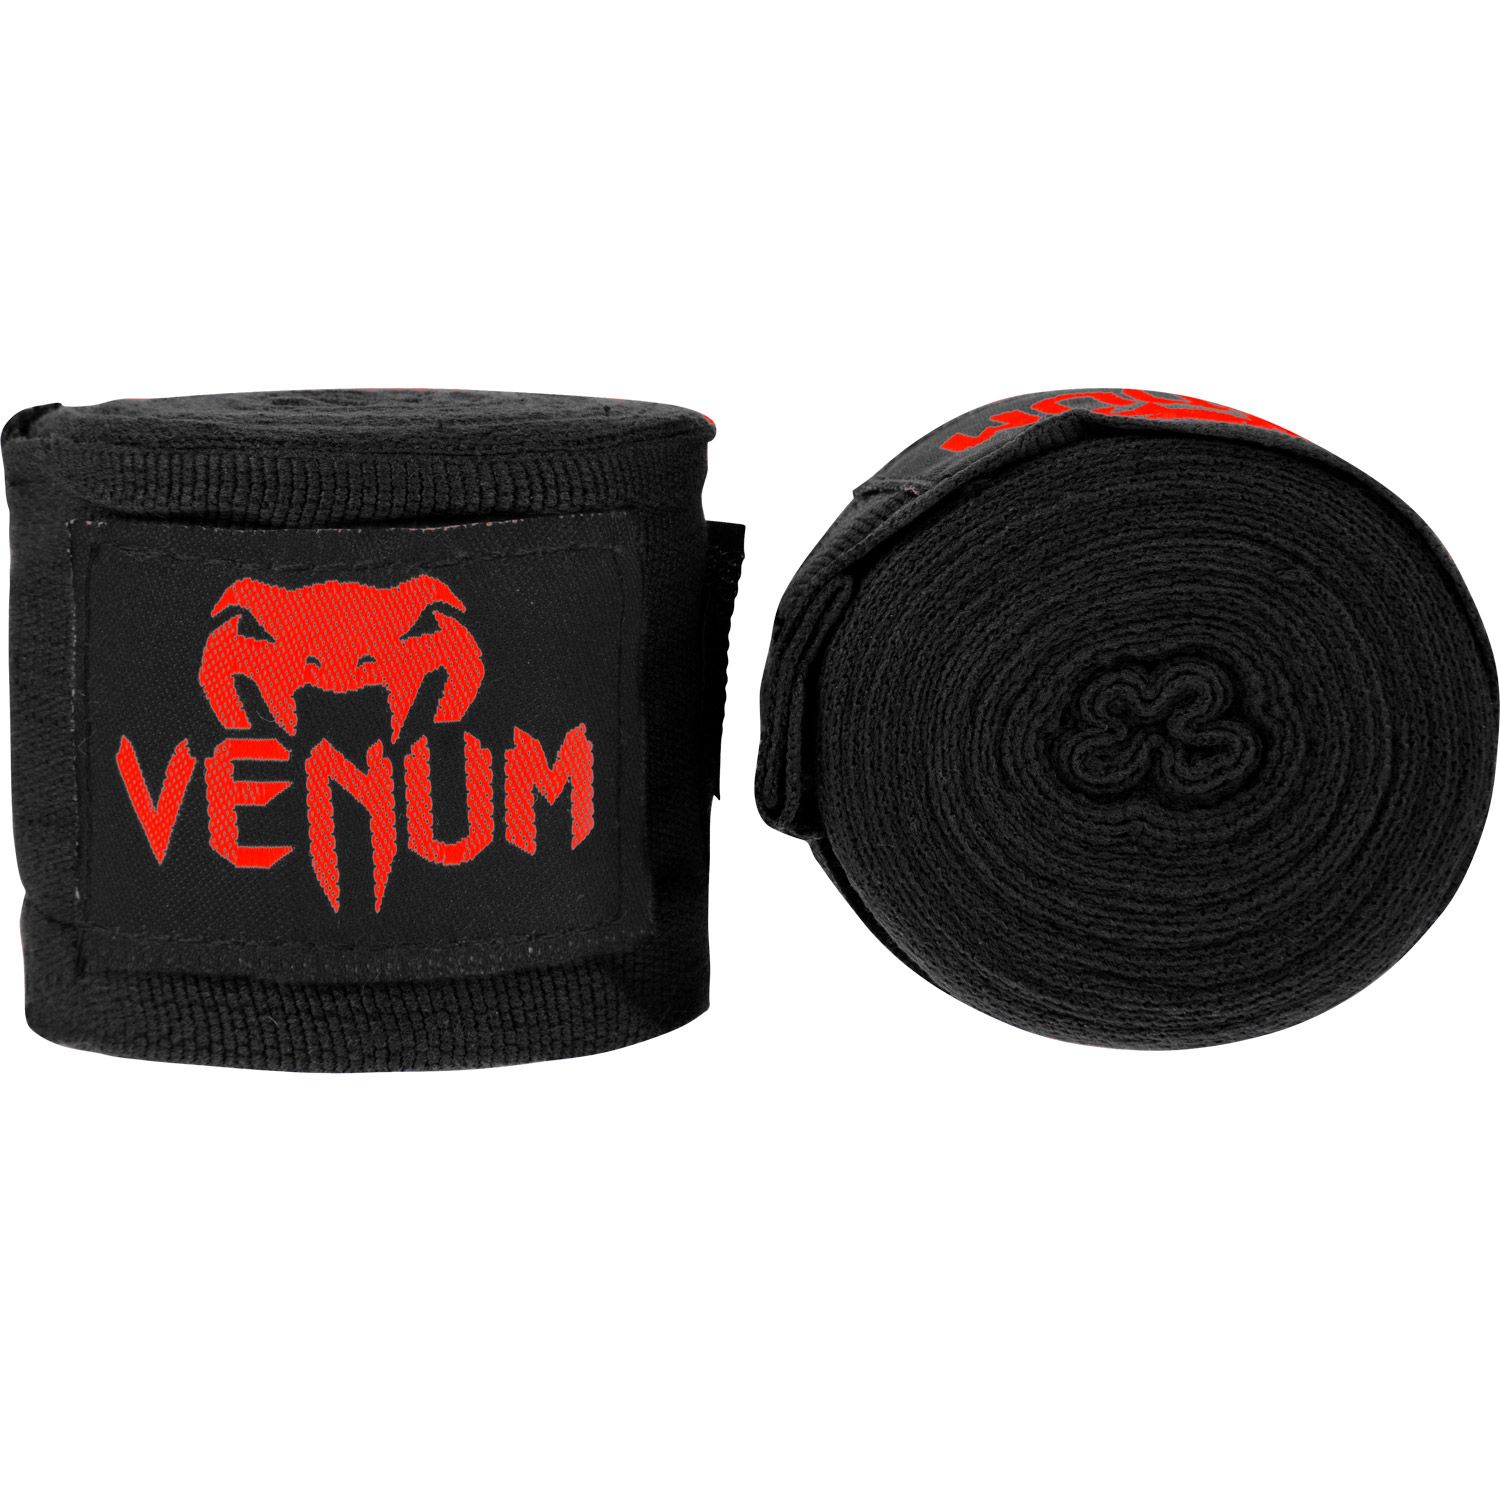 Bandages de boxe Venum Kontact - Noir/Rouge - 2,5 mètres